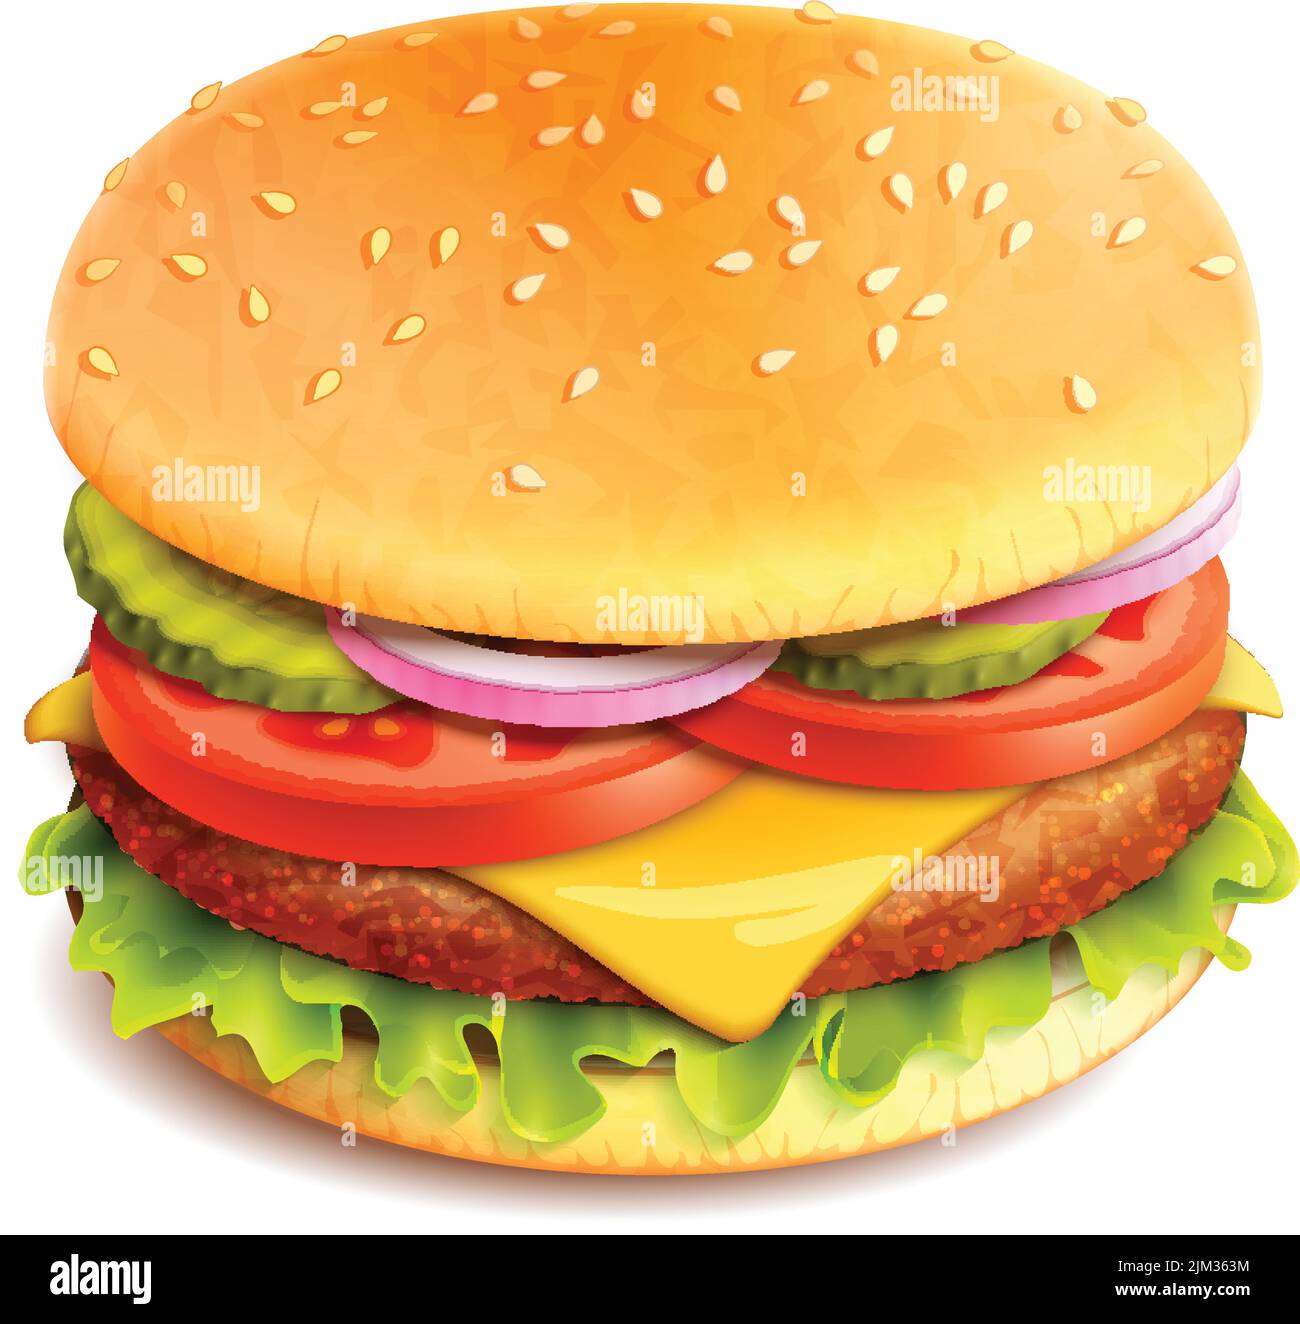 Hamburger Fast Food Sandwich Emblem realistisch isoliert auf weißem Hintergrund vektorgrafik Stock Vektor